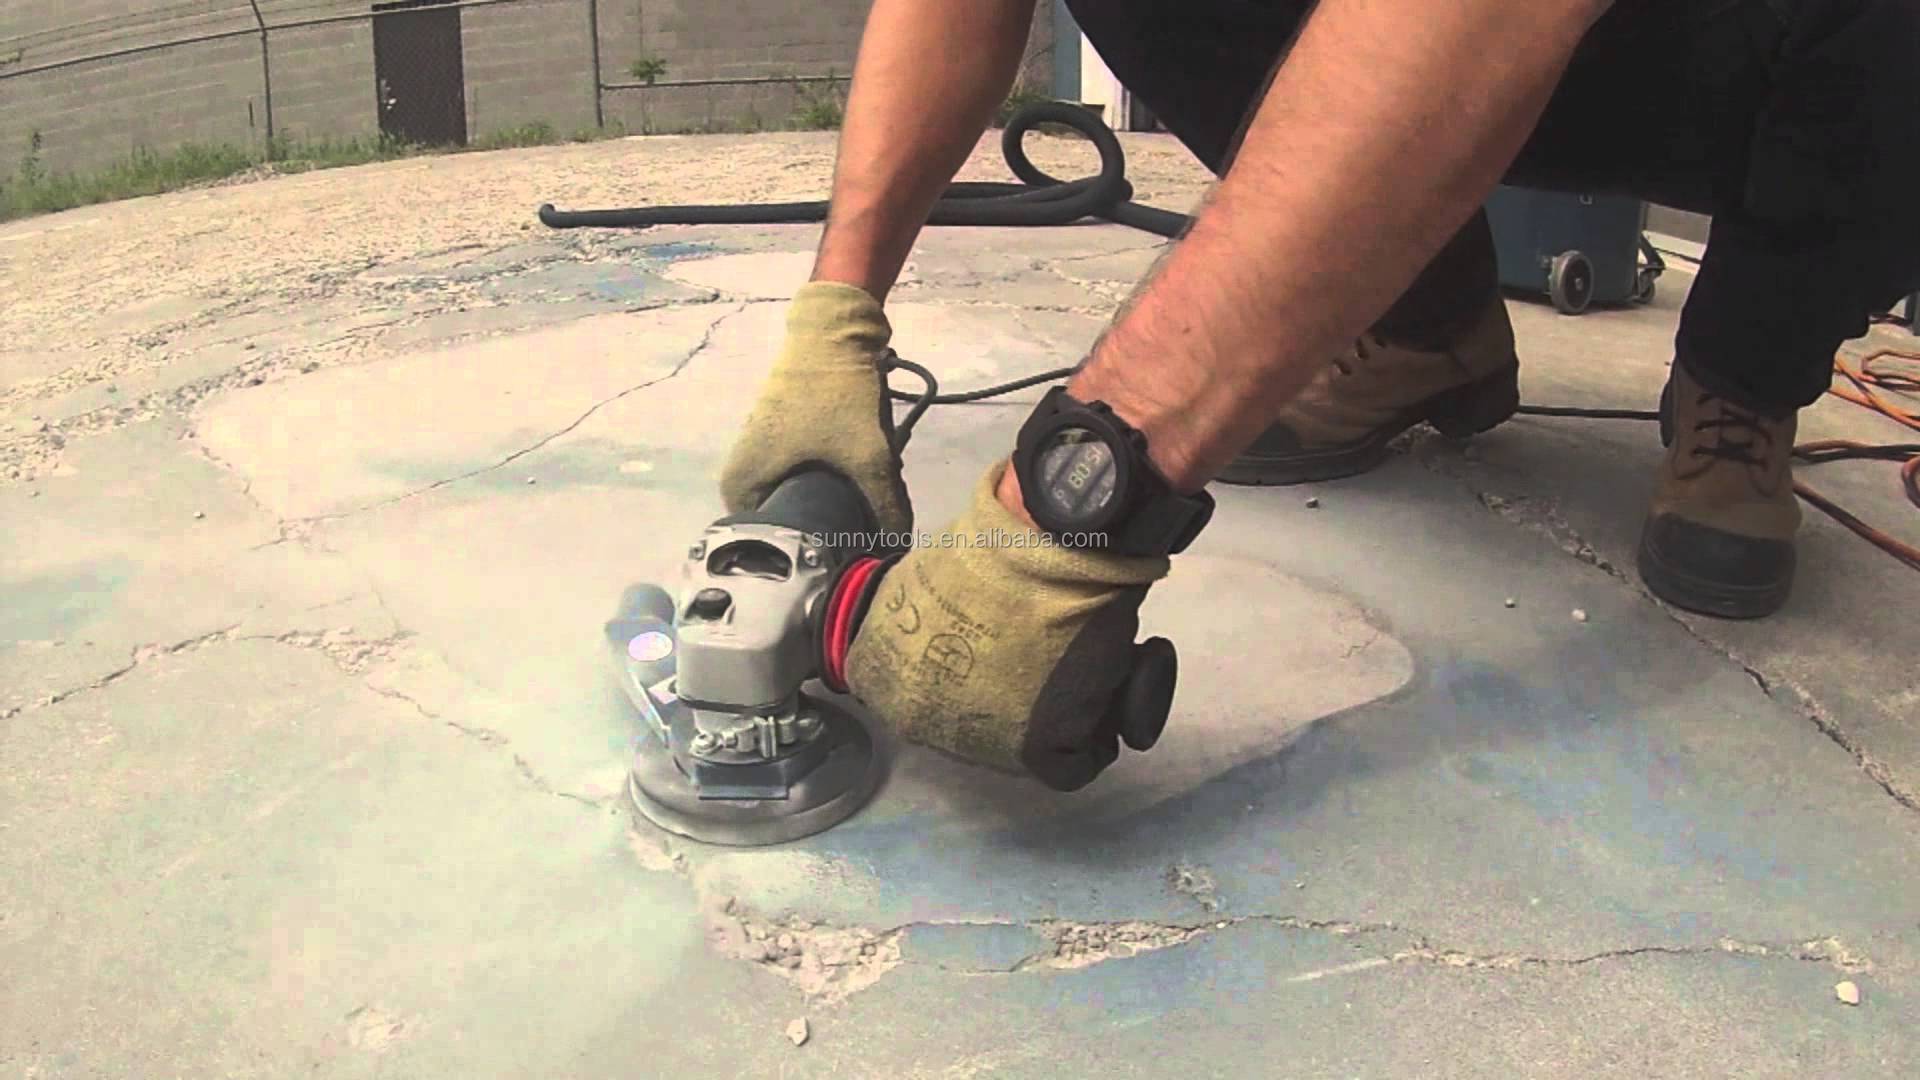 Шлифовка бетона своими руками: особенности, инструмент, технология